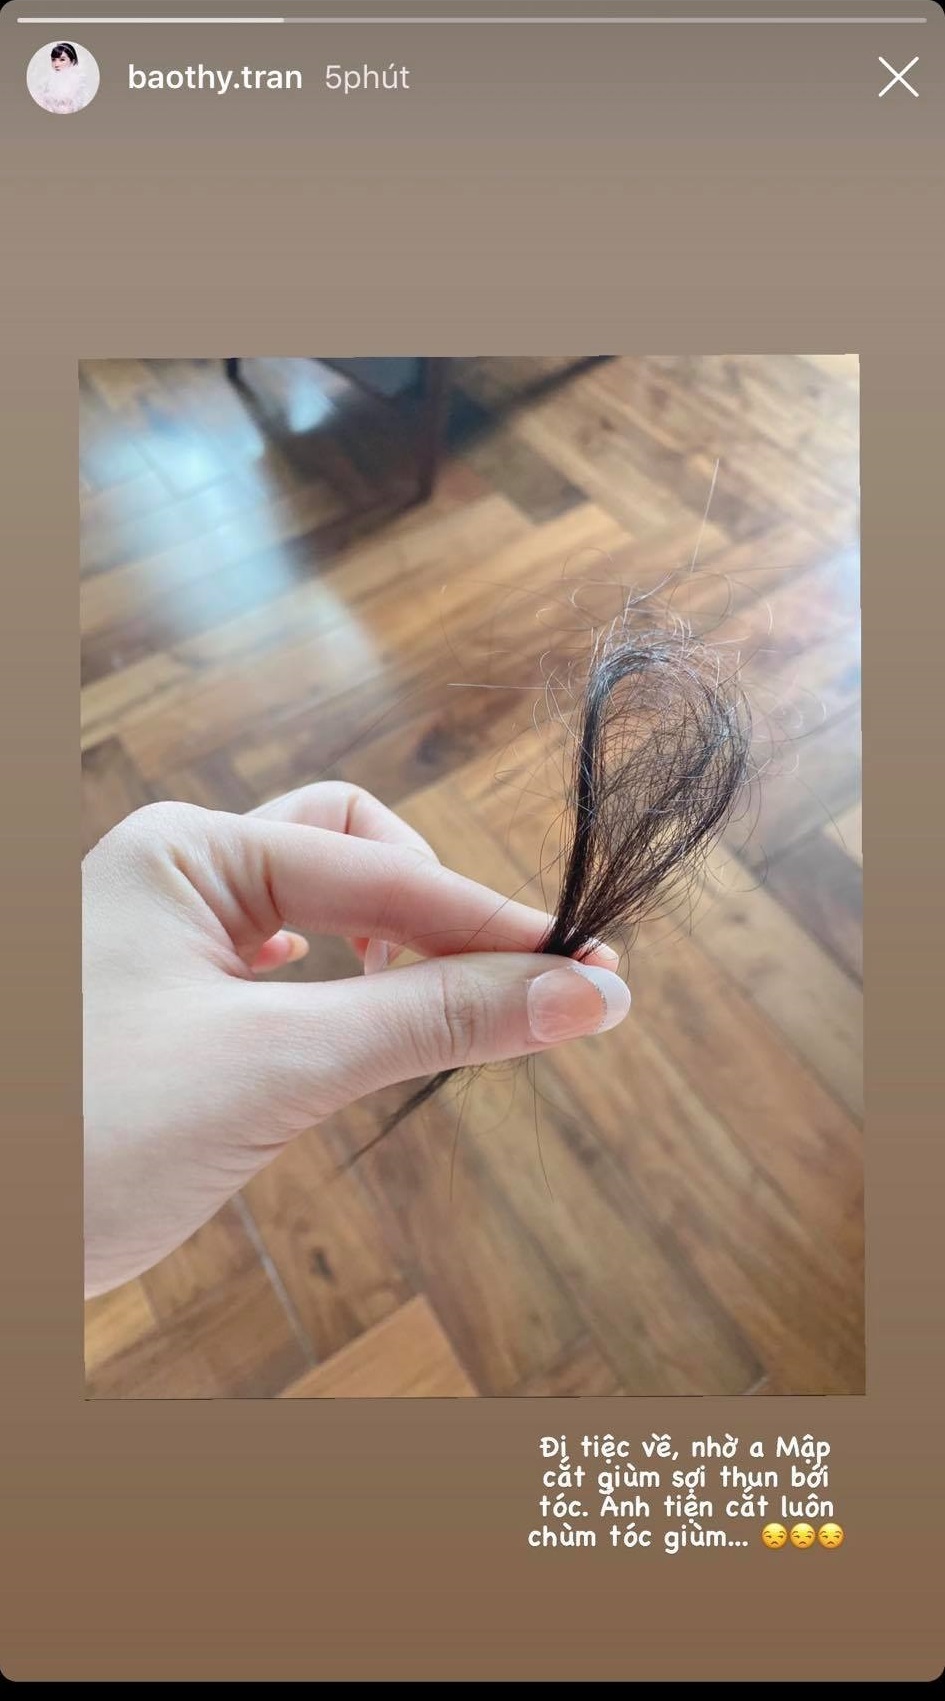 
Ca sĩ chia sẻ "hậu quả" mất một chùm tóc của mình khi nhờ chồng cắt giúp sợi thun. (Ảnh: Chụp màn hình)